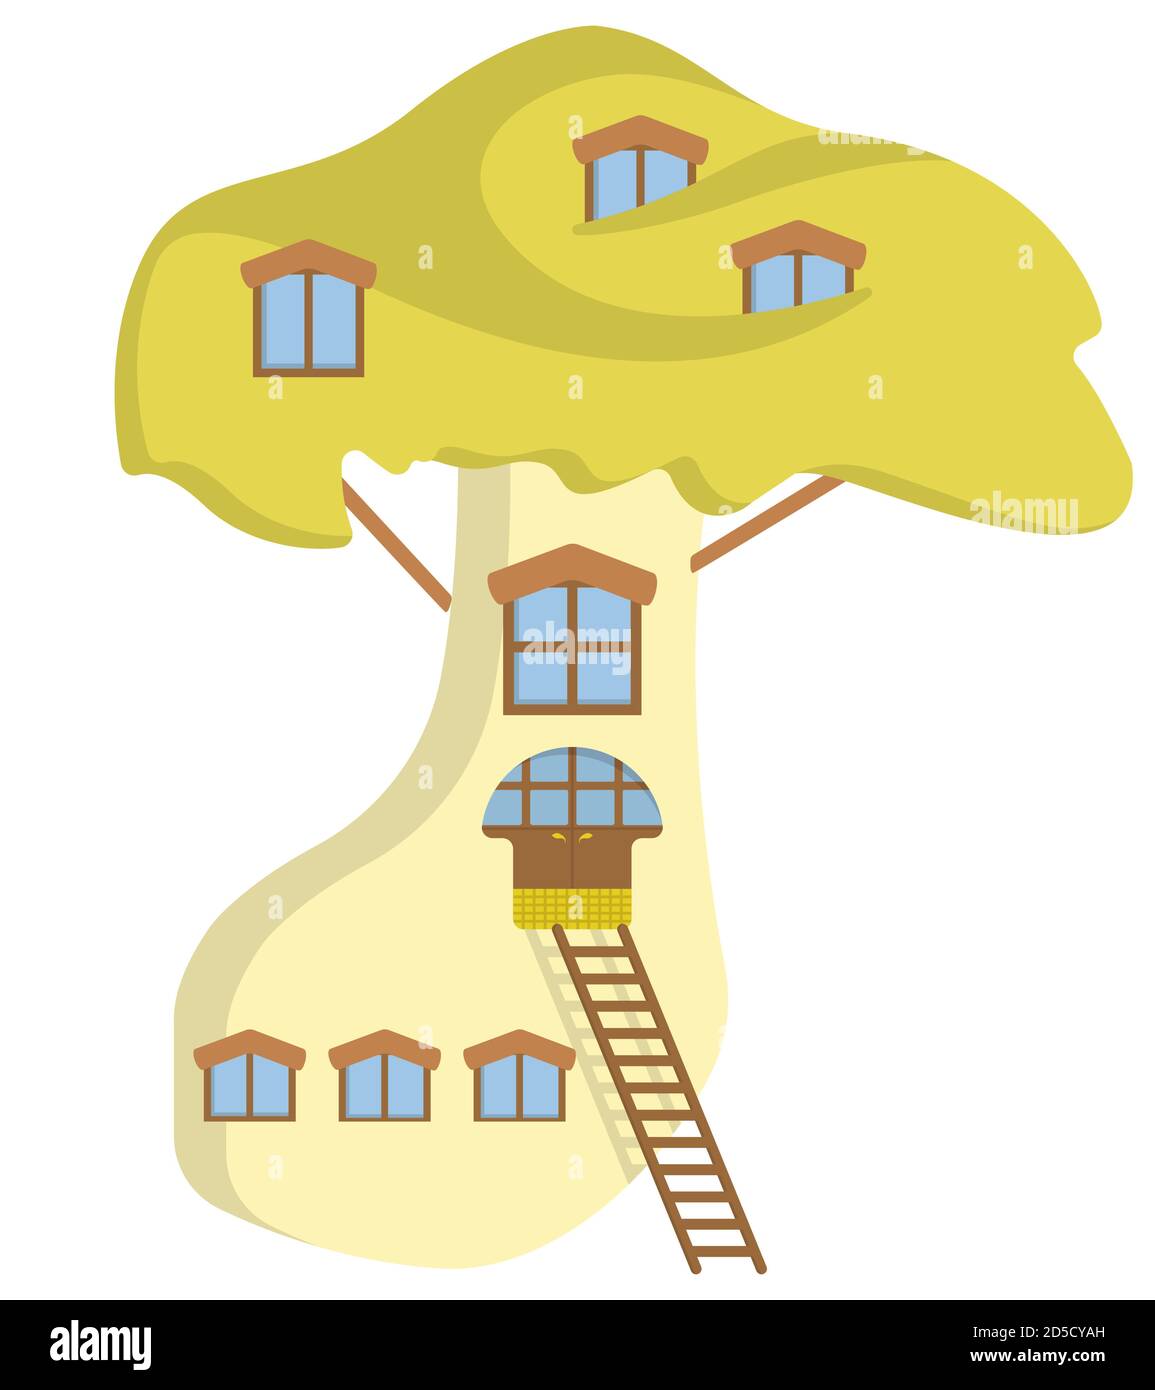 Mushroom shaped building. Fairytale house in cartoon style. Stock Vector